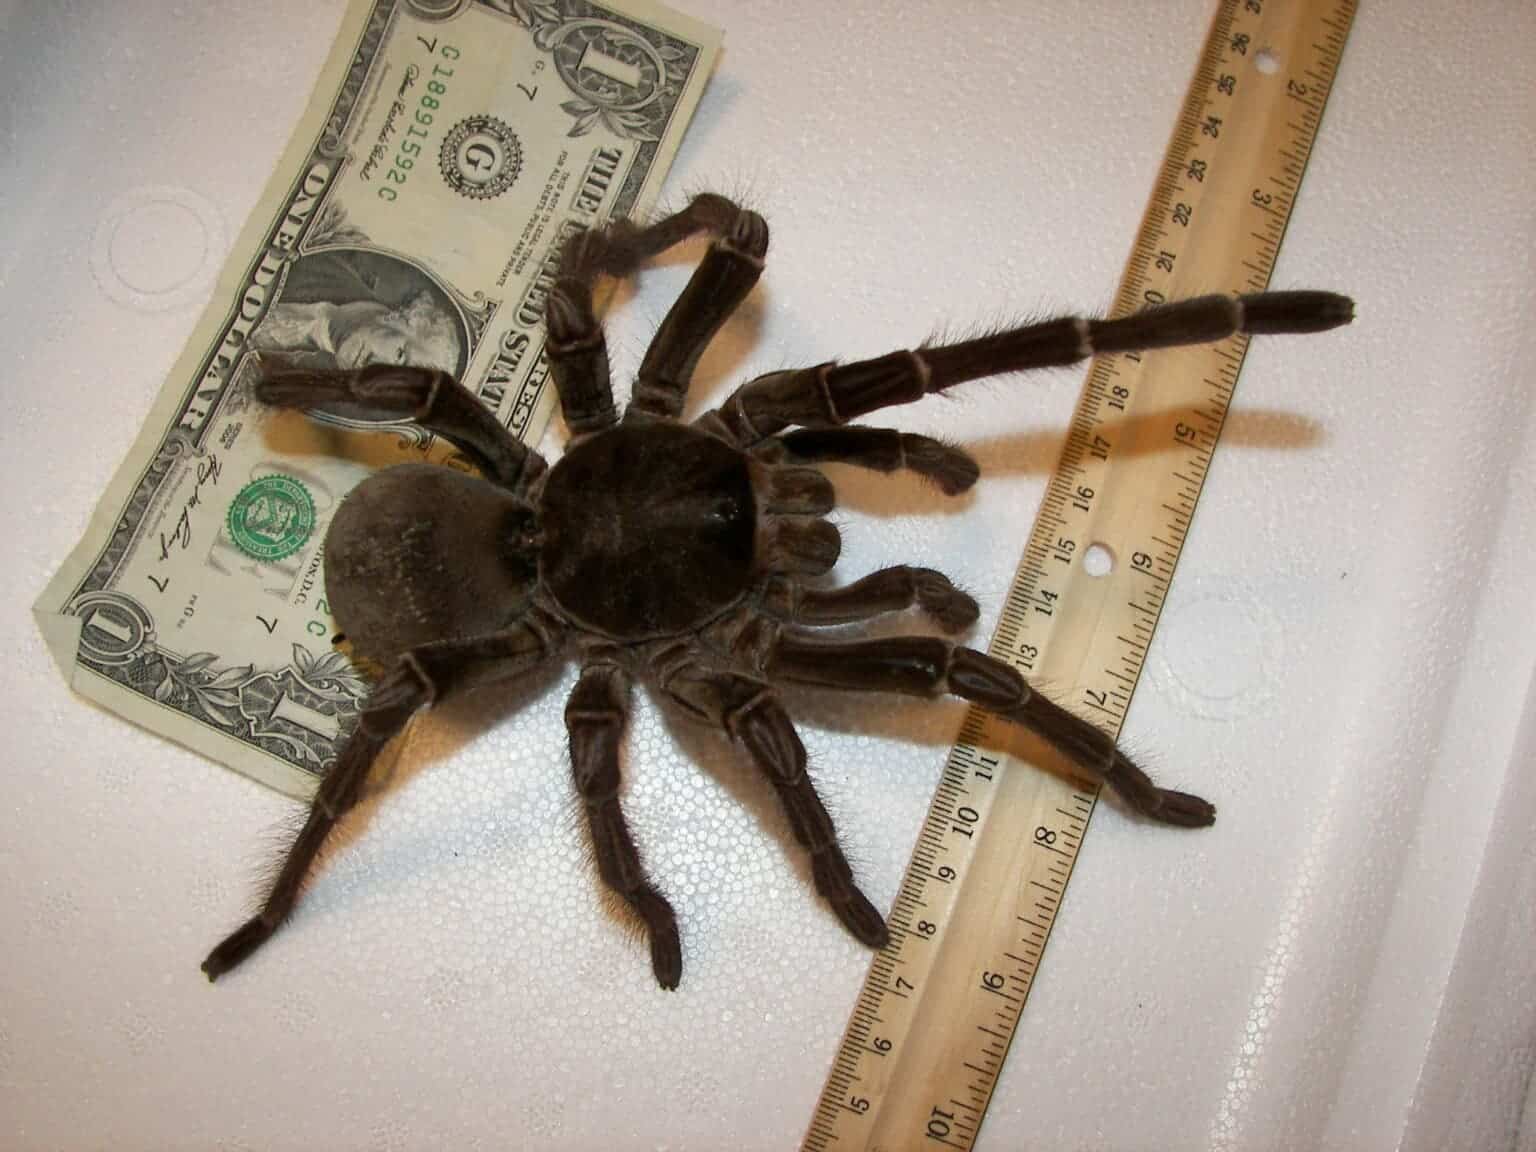 Loài nhện khổng lồ có kích thước bằng một con chó con